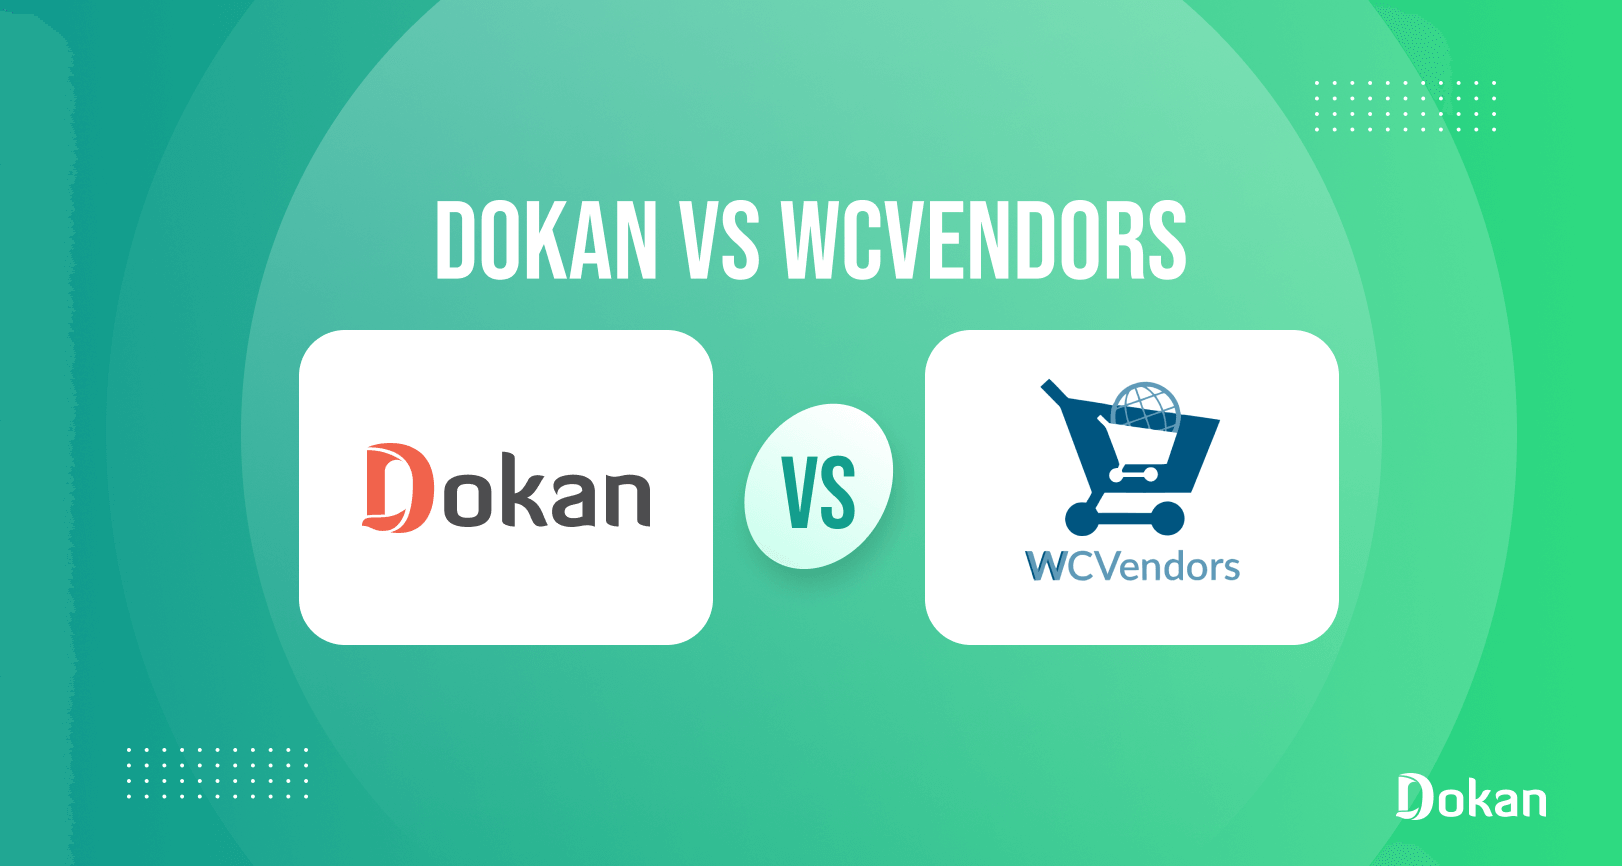 Fournisseurs Dokan vs WC : voici ce que vous devriez vérifier avant de prendre une décision